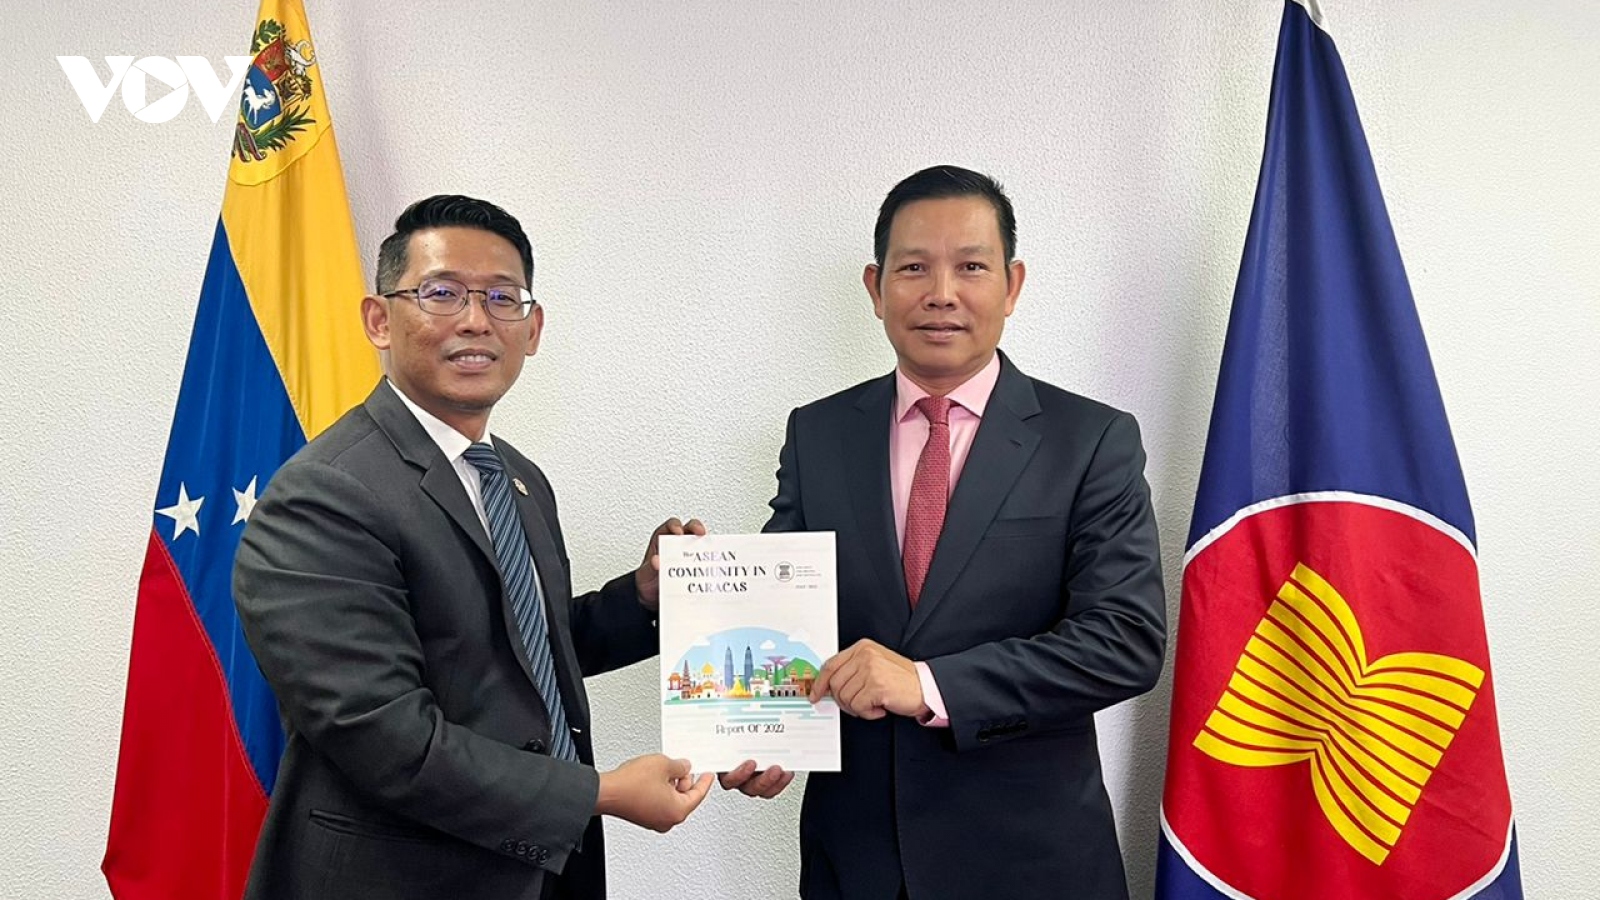 Đại sứ Việt Nam đảm nhận vai trò Chủ tịch luân phiên ASEAN tại Venezuela